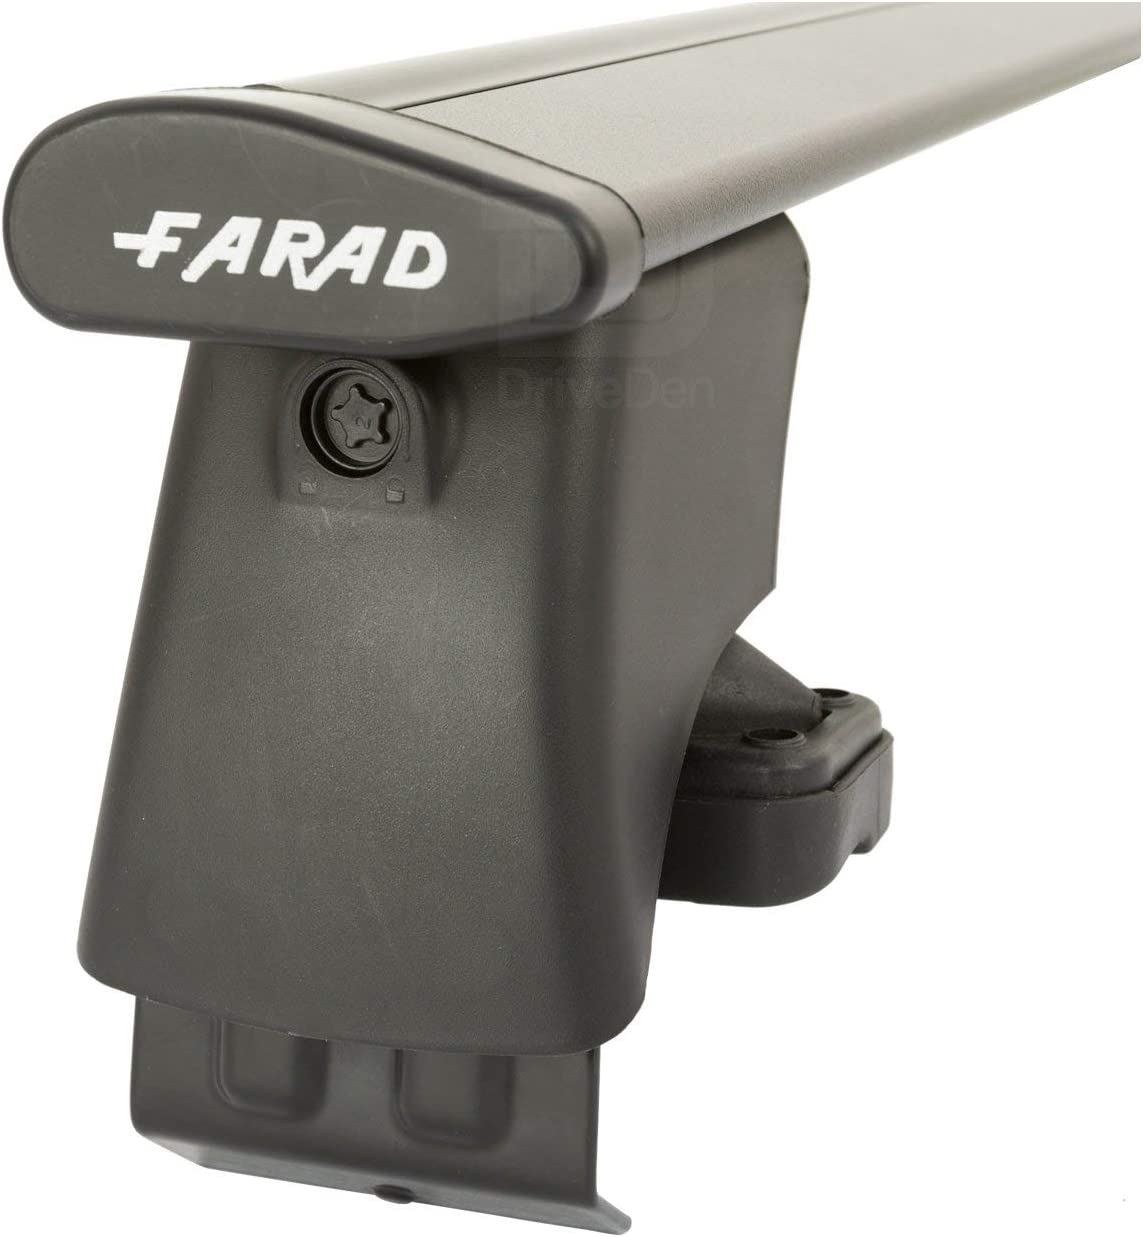 FARAD-Kit H2 per barre portatutto - Chevrolet Matiz 2005-2009 (senza corrimano)